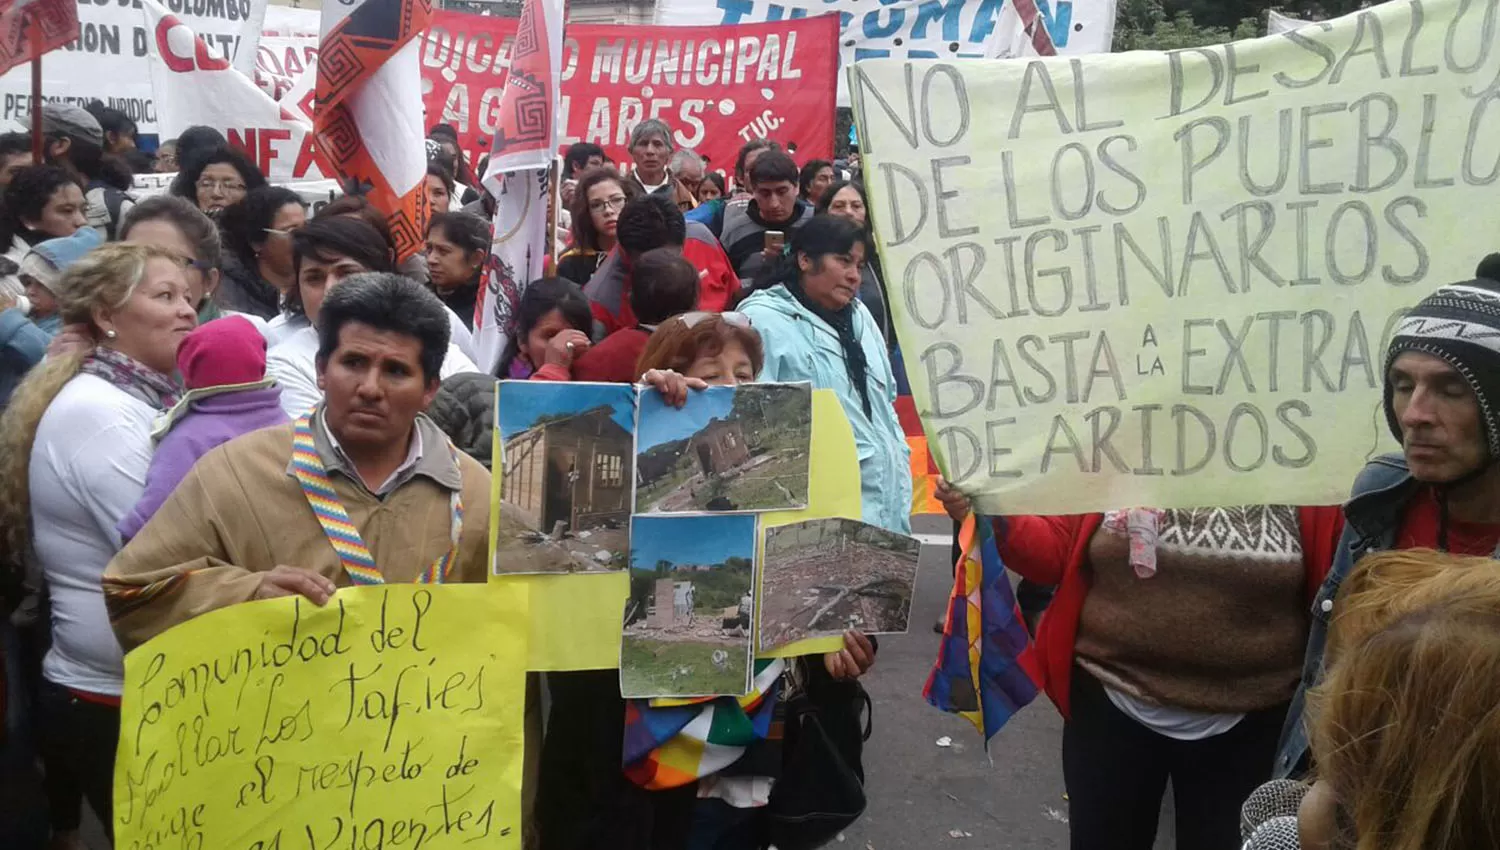 EN LA PLAZA. Indigenistas pidieron justicia por la muerte de Javier Chocobar. LA GACETA / FOTO DE FRANCO VERA